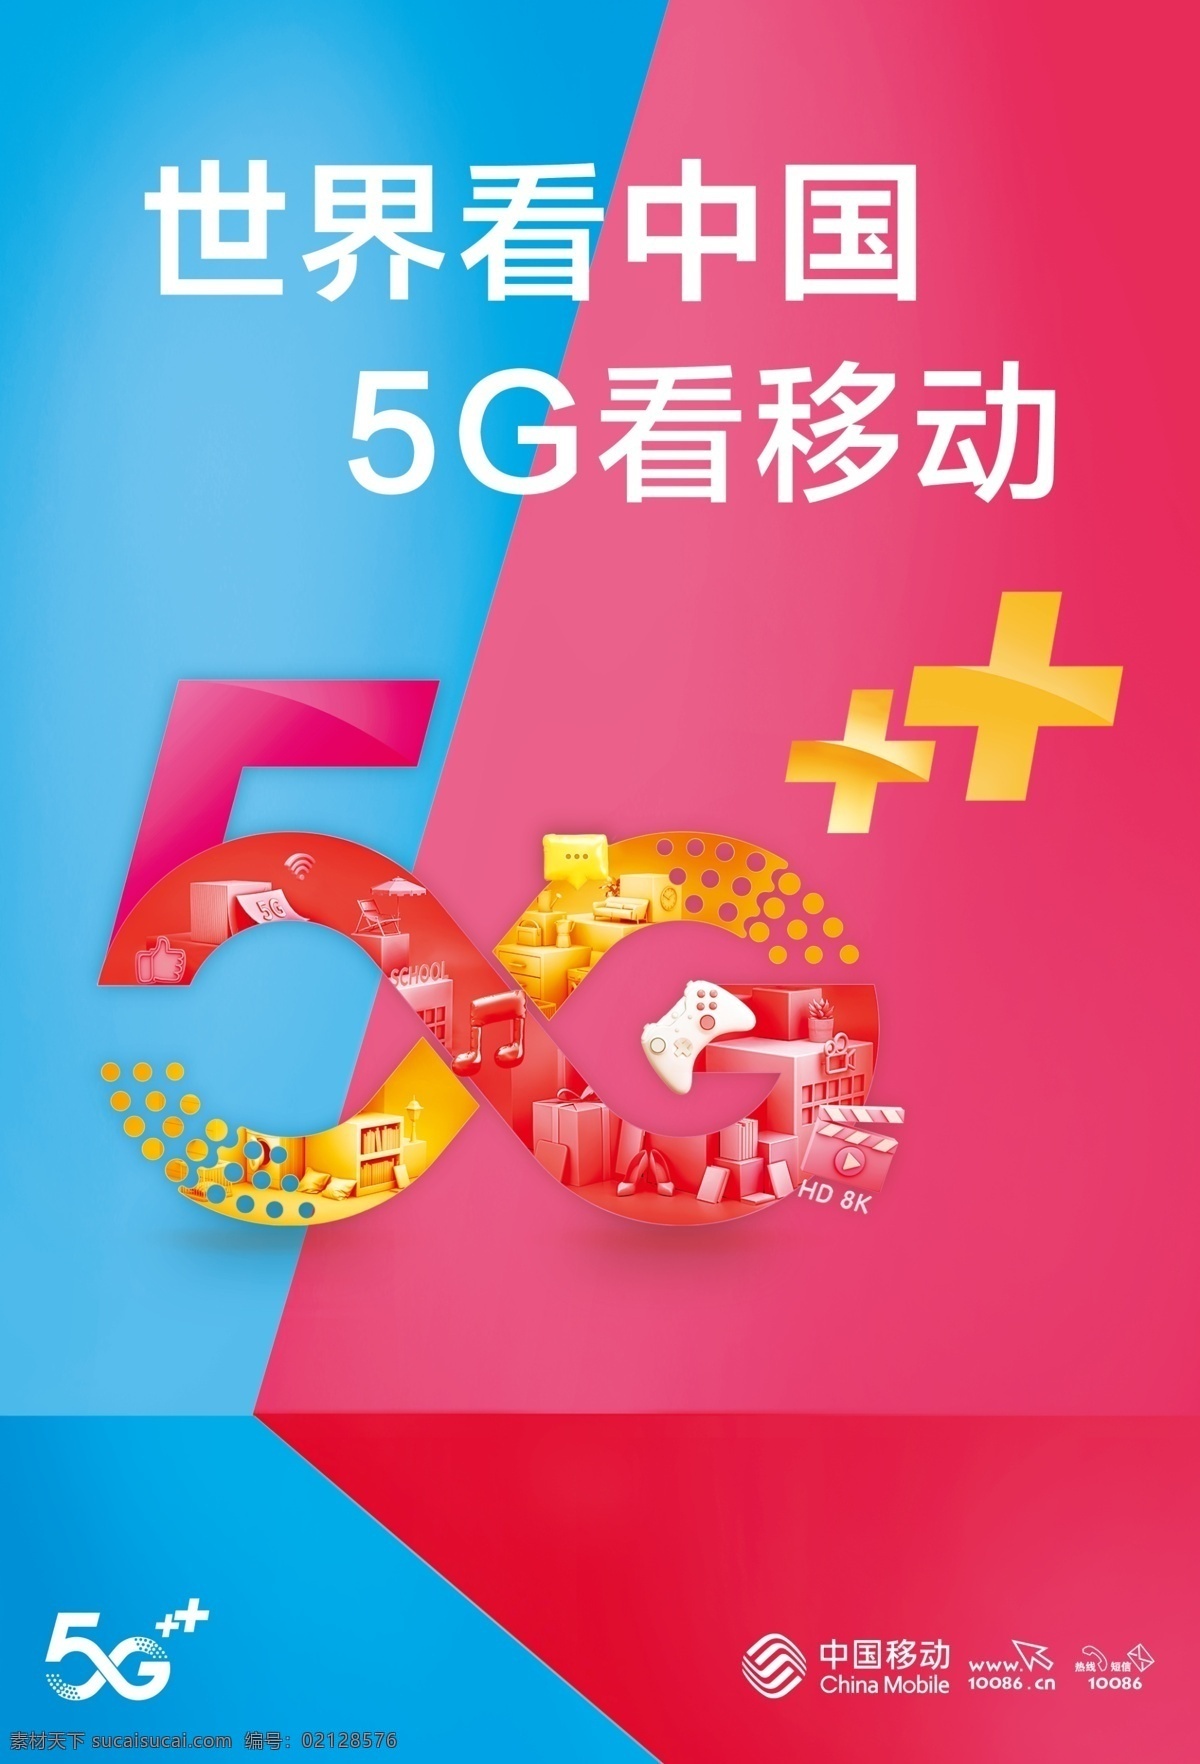 移动5g宣传 移动 中国移动 移动标志 移动logo 5g 5glogo 手机 经销商 网络 5g网络 5g看移动